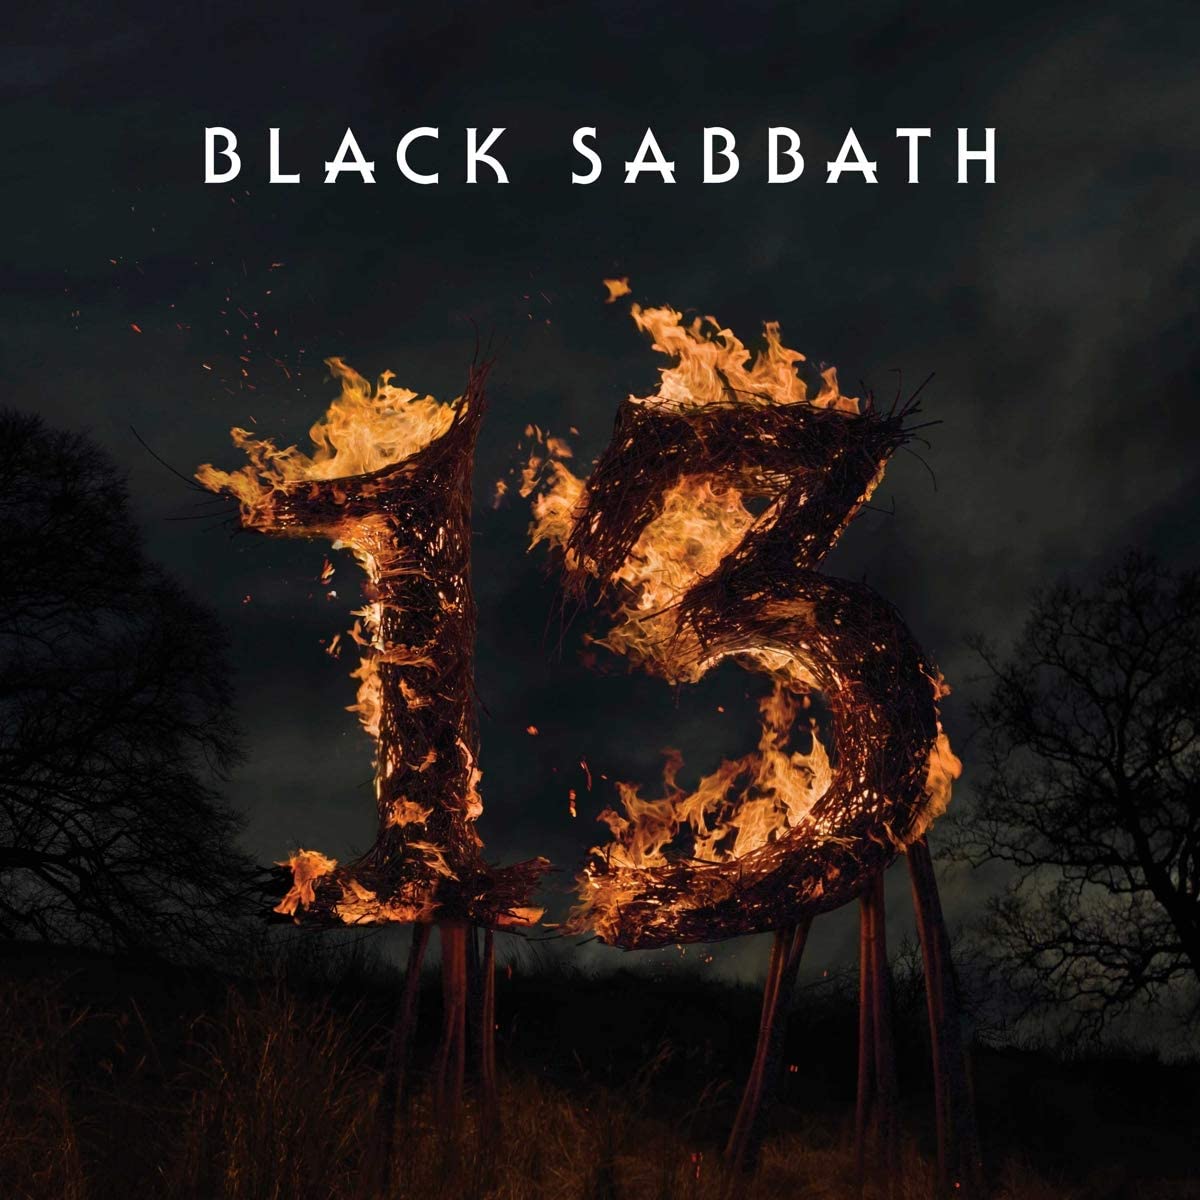 Black Sabbath - 13 (Vinyl LP)